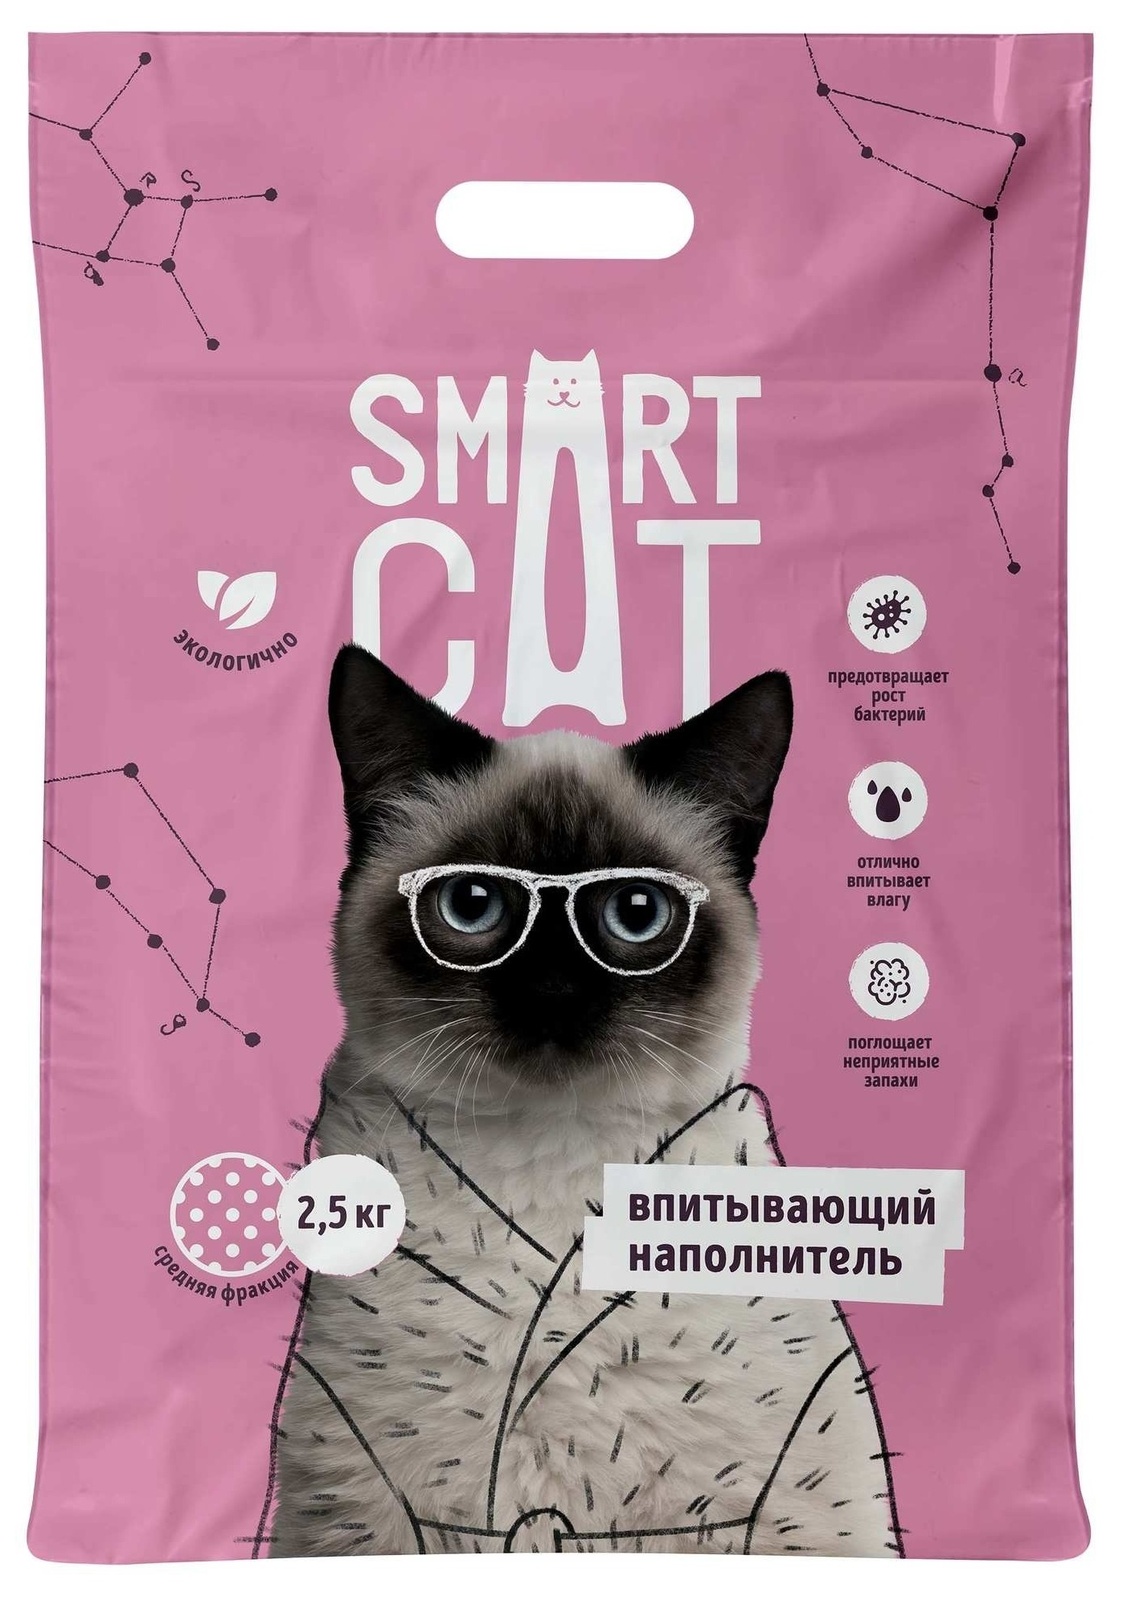 Smart Cat наполнитель Smart Cat наполнитель впитывающий наполнитель, средняя фракция (5 кг) smart cat наполнитель smart cat наполнитель впитывающий наполнитель мелкая фракция 5 кг